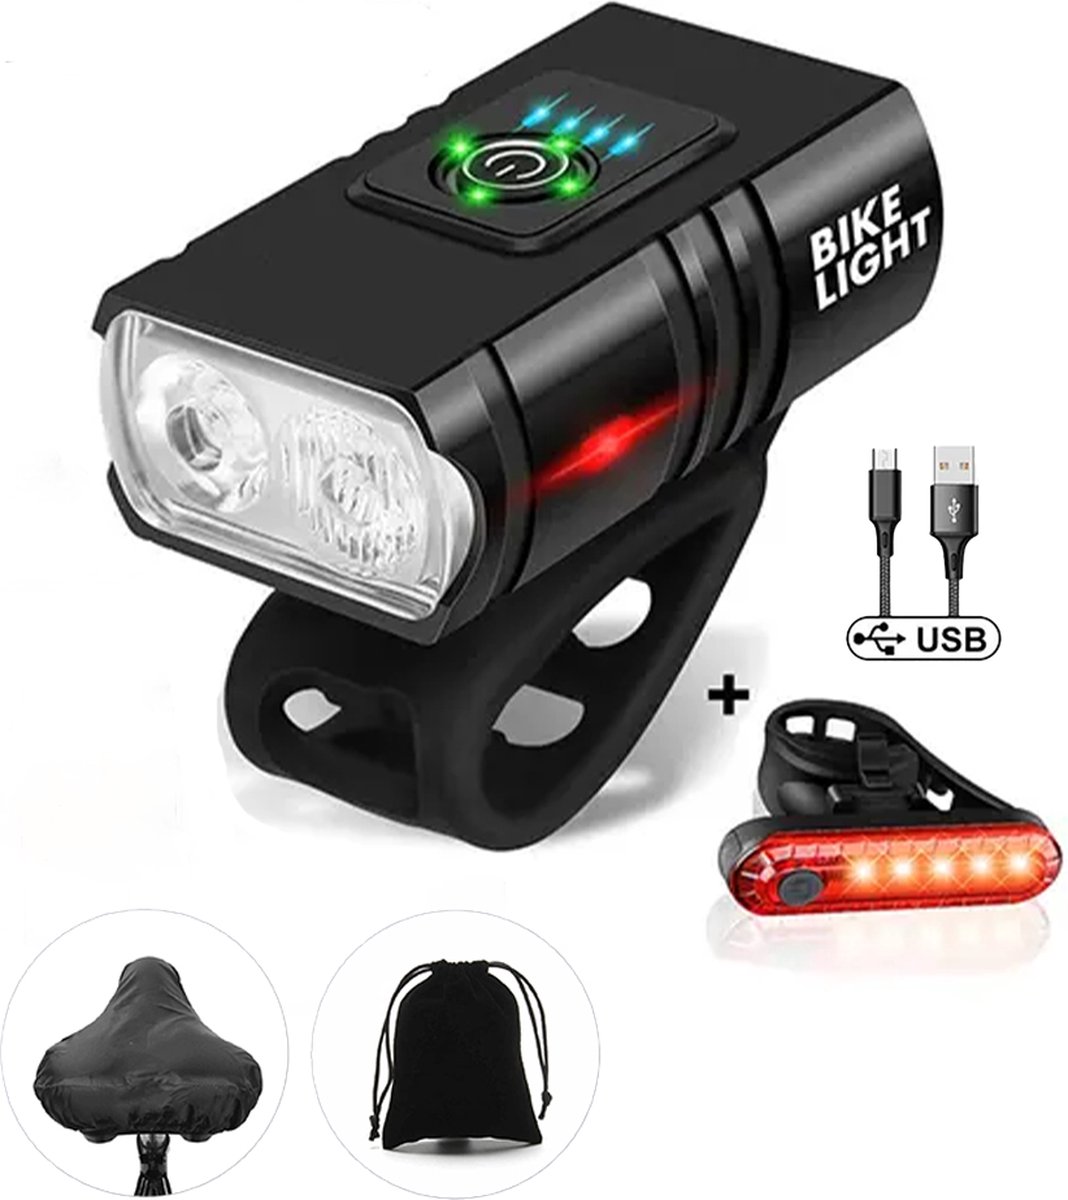 Fietsverlichting - 1000 & 500 Lumen - USB Oplaadbaar - Roteerbaar - Waterproof - Fietslicht - LED Fiets Verlichting Set